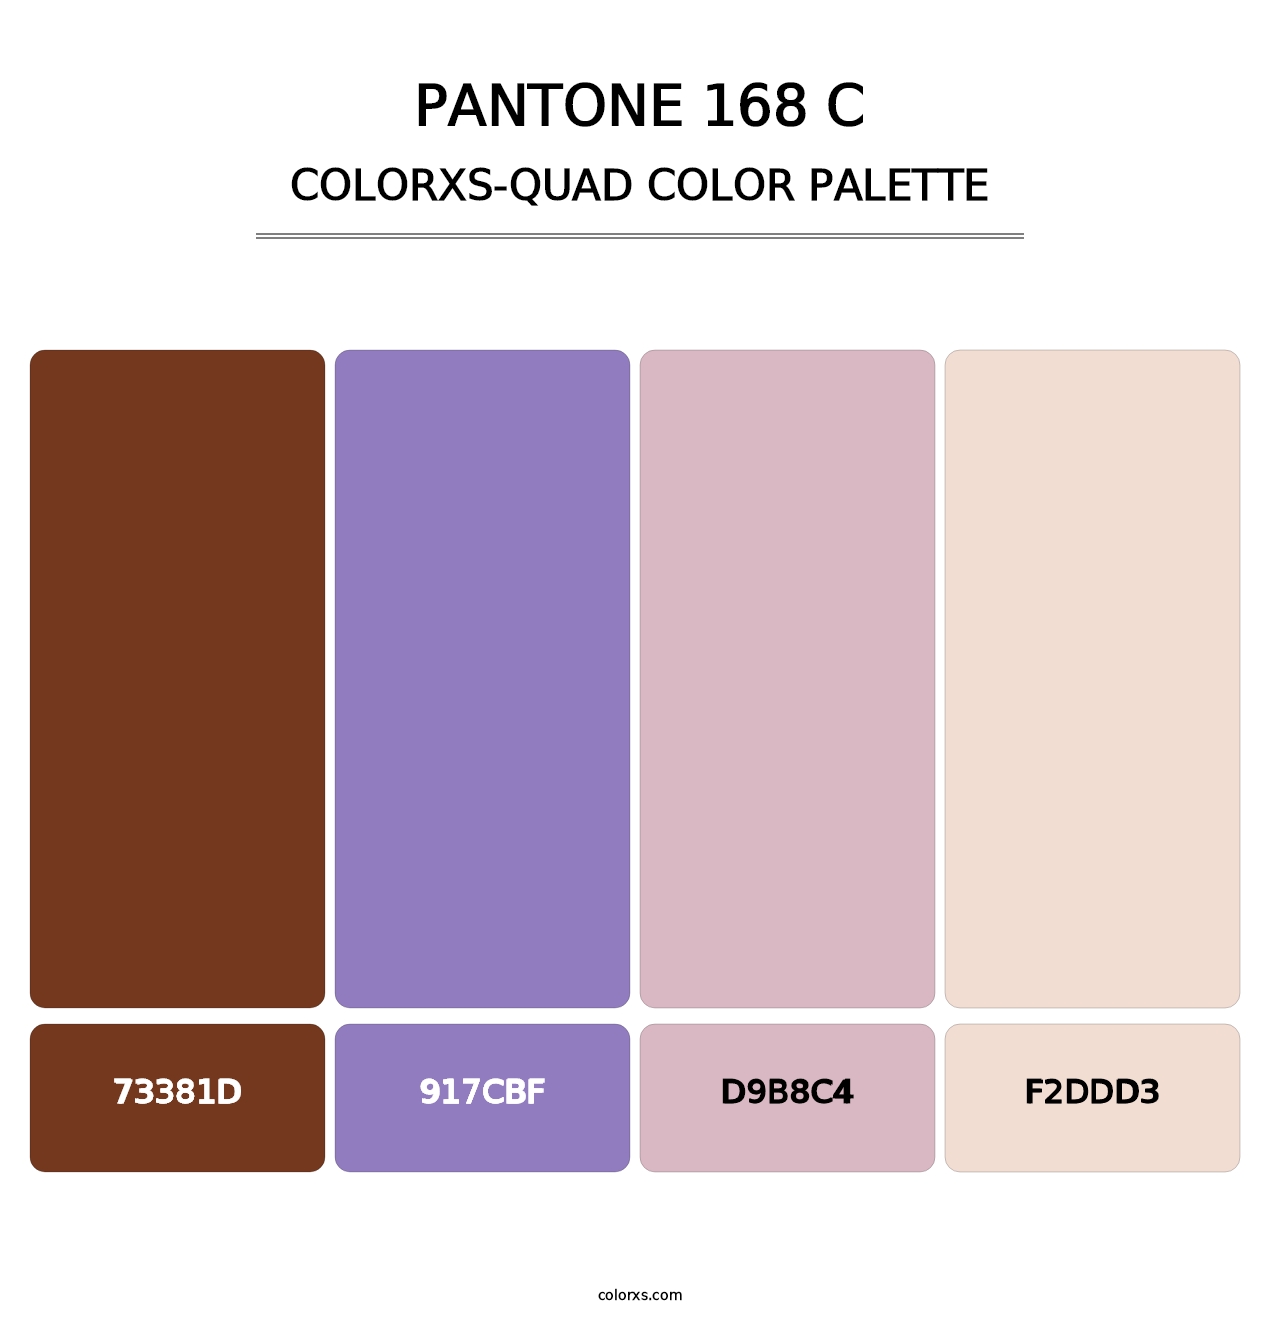 PANTONE 168 C - Colorxs Quad Palette